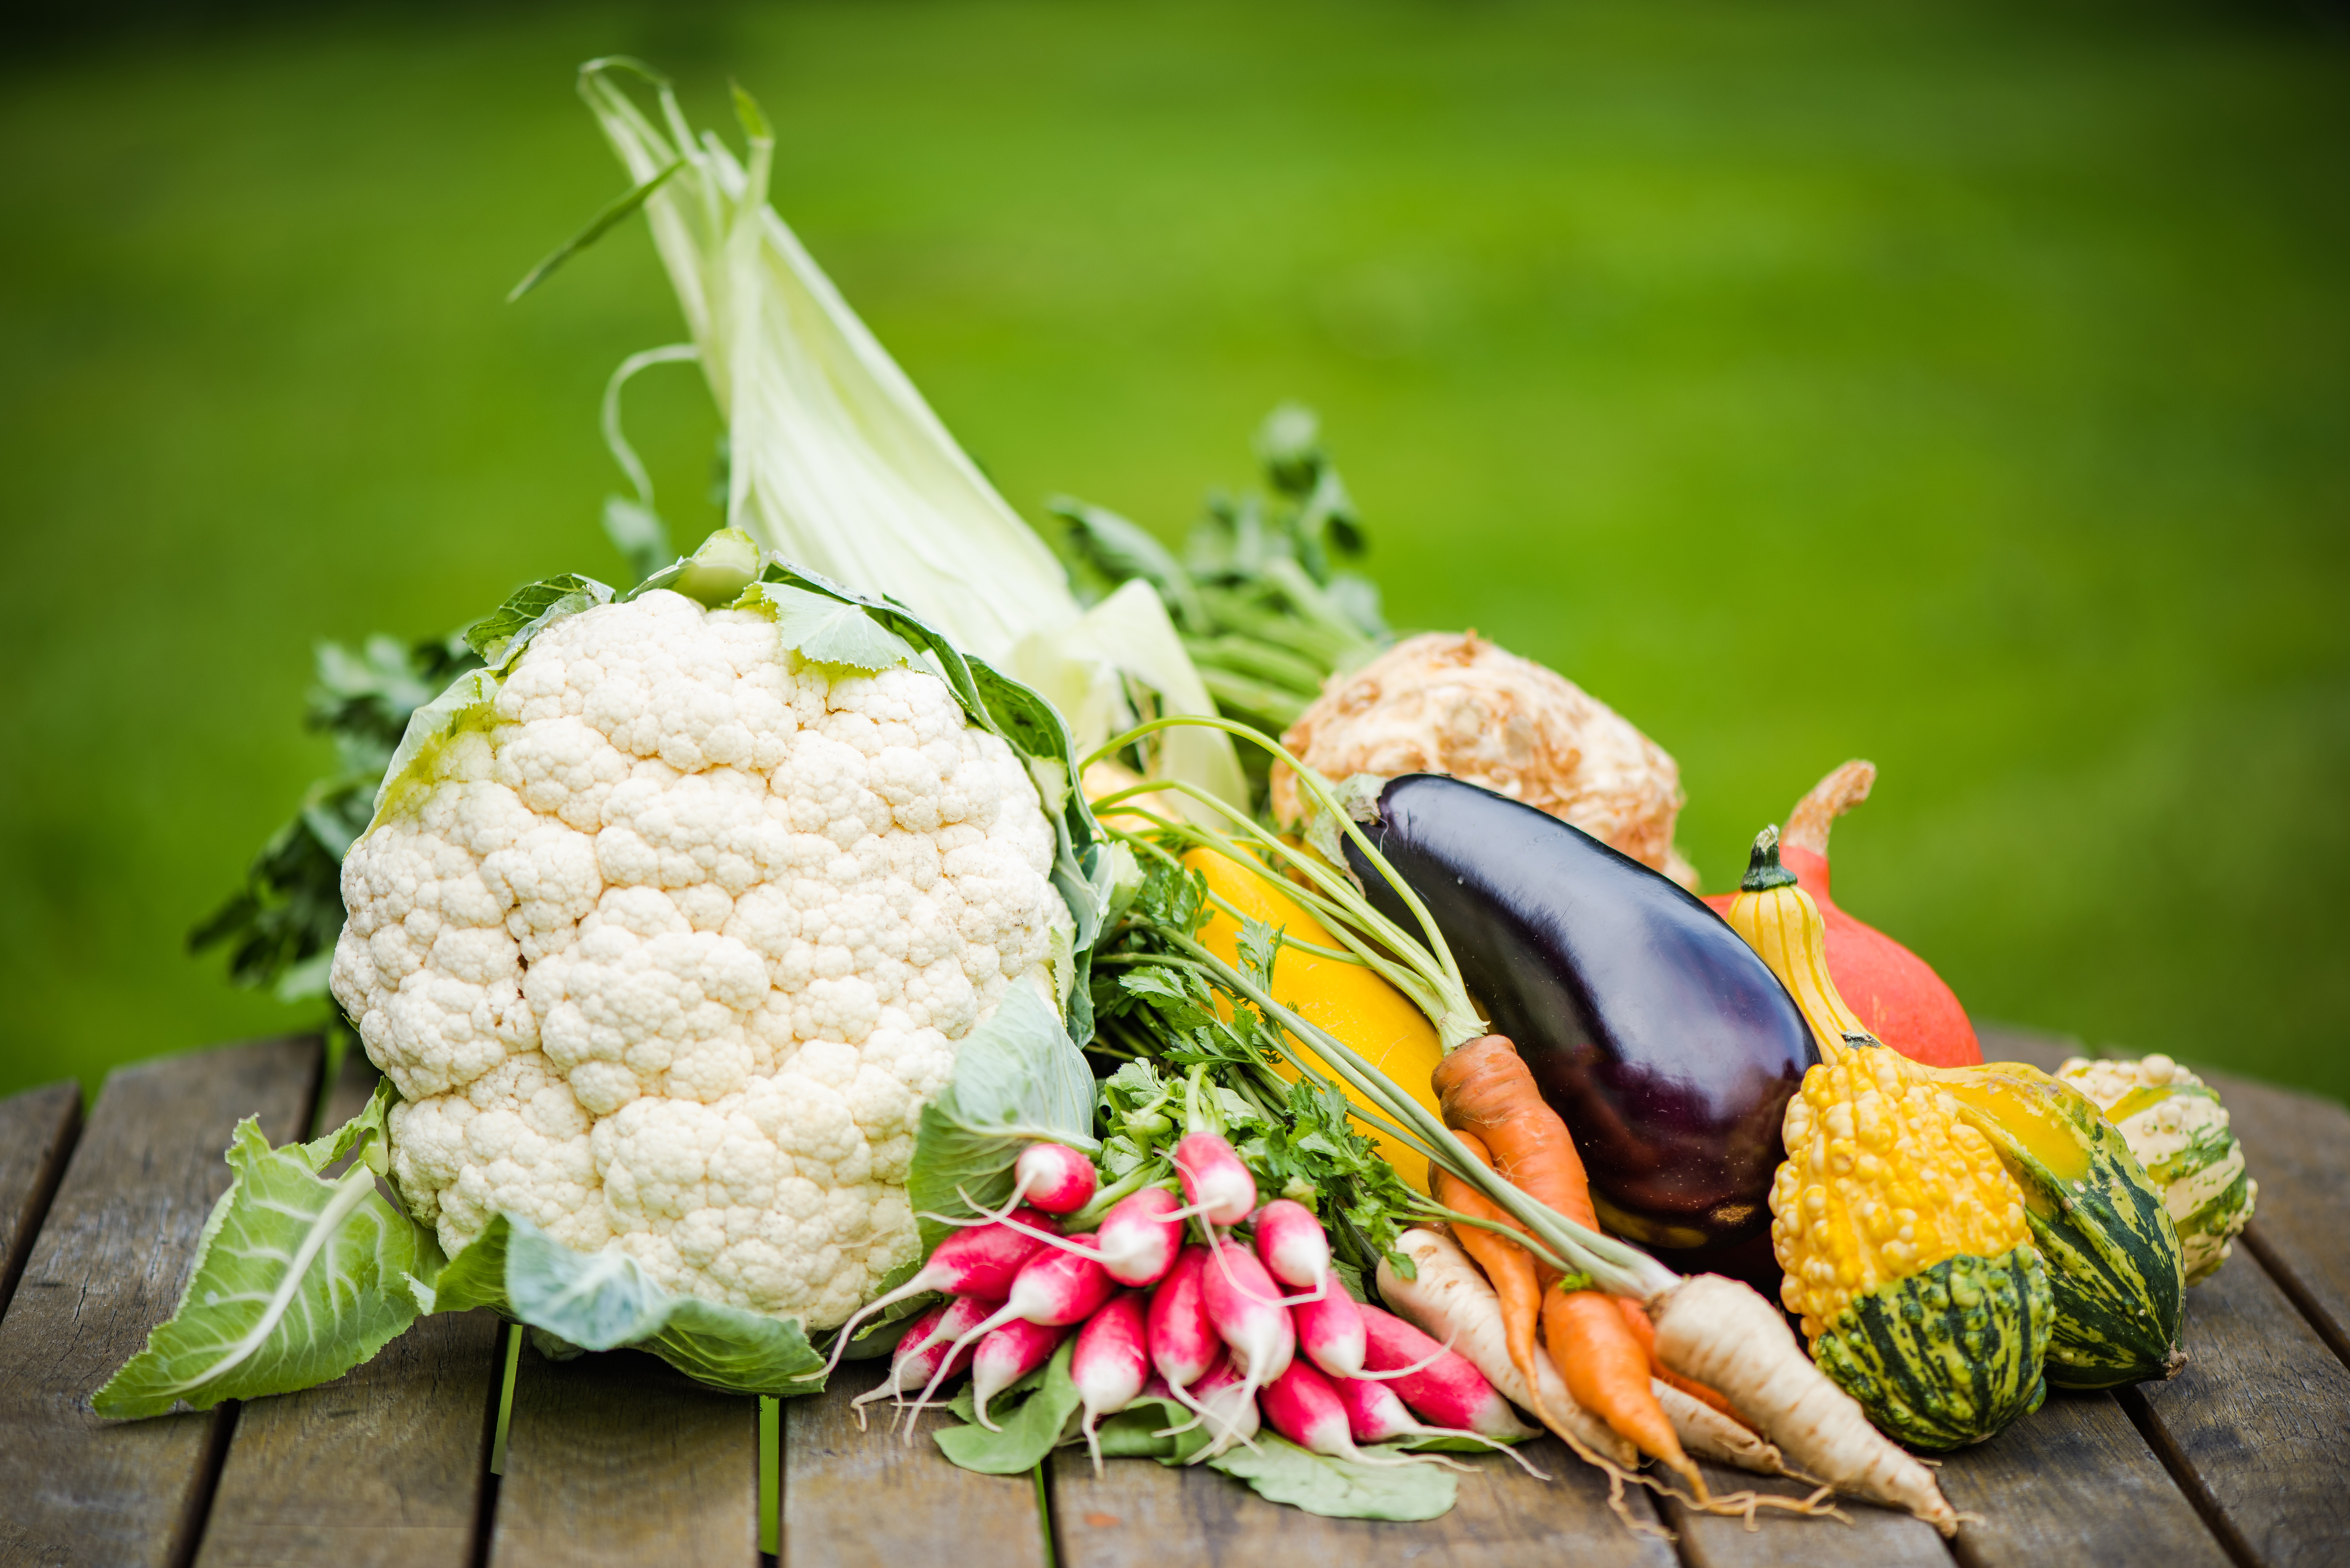 A magas rosstartalmú, nyers zöldségekben és telítetlen zsírsavakban gazdag étrend növeli a hasznos bélbaktériumok arányát. (Fotó: Envato Elements)